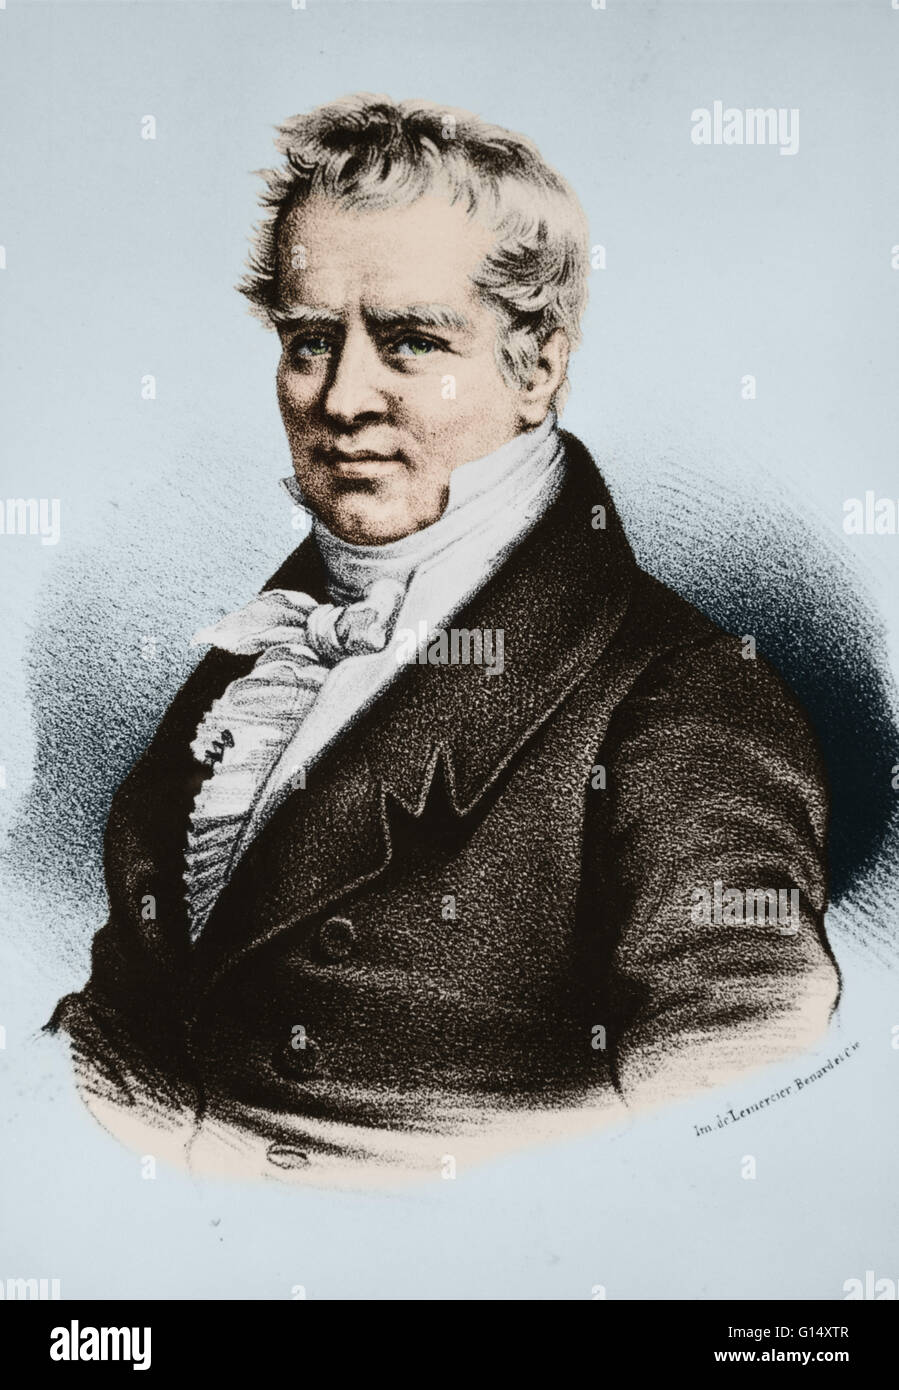 Friedrich Wilhelm Heinrich Alexander von Humboldt 14. September 1769 - 6. Mai 1859) war ein preußischer Geograph, Naturforscher und Entdecker. Seine quantitative Arbeit auf botanische Geographie legte den Grundstein für den Bereich der Biogeographie. Zwischen 1799 und 1804, Stockfoto